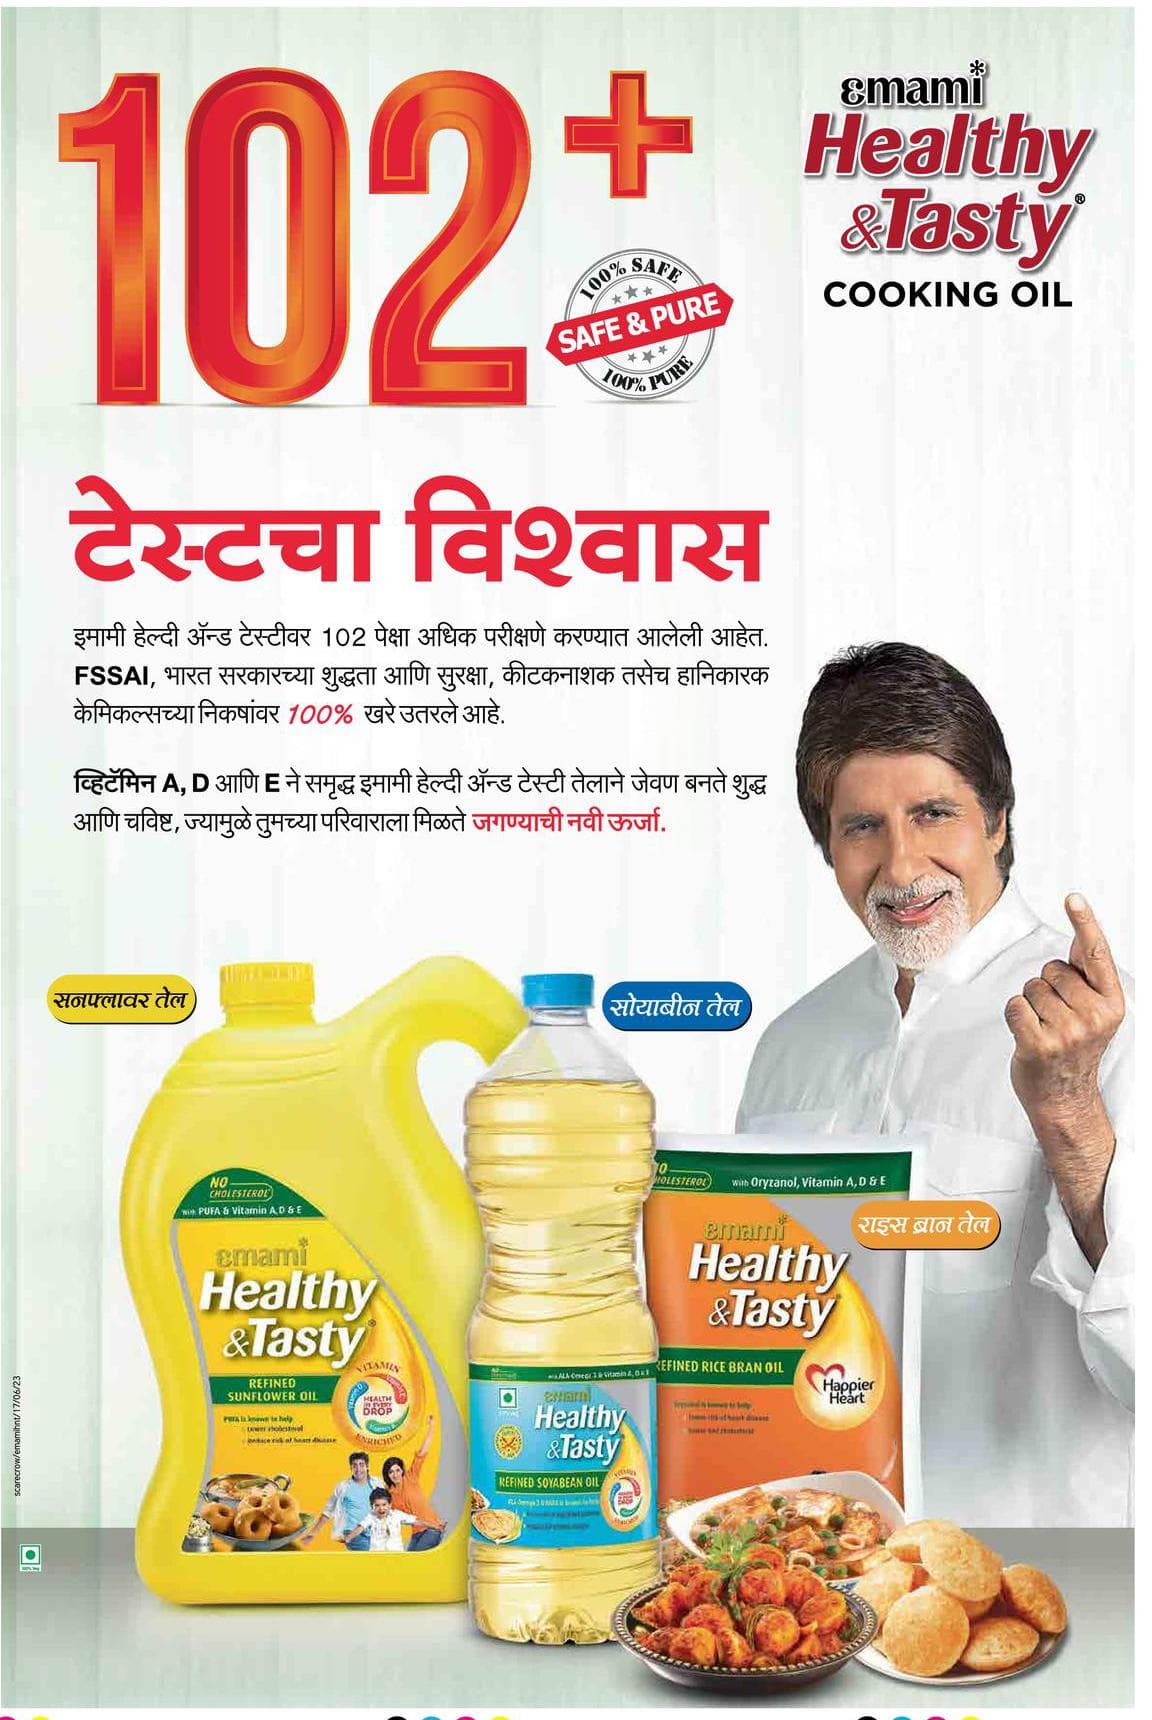 Emami Healthy & Tasty Cooking Oil 102+ Testcha Vishwas 